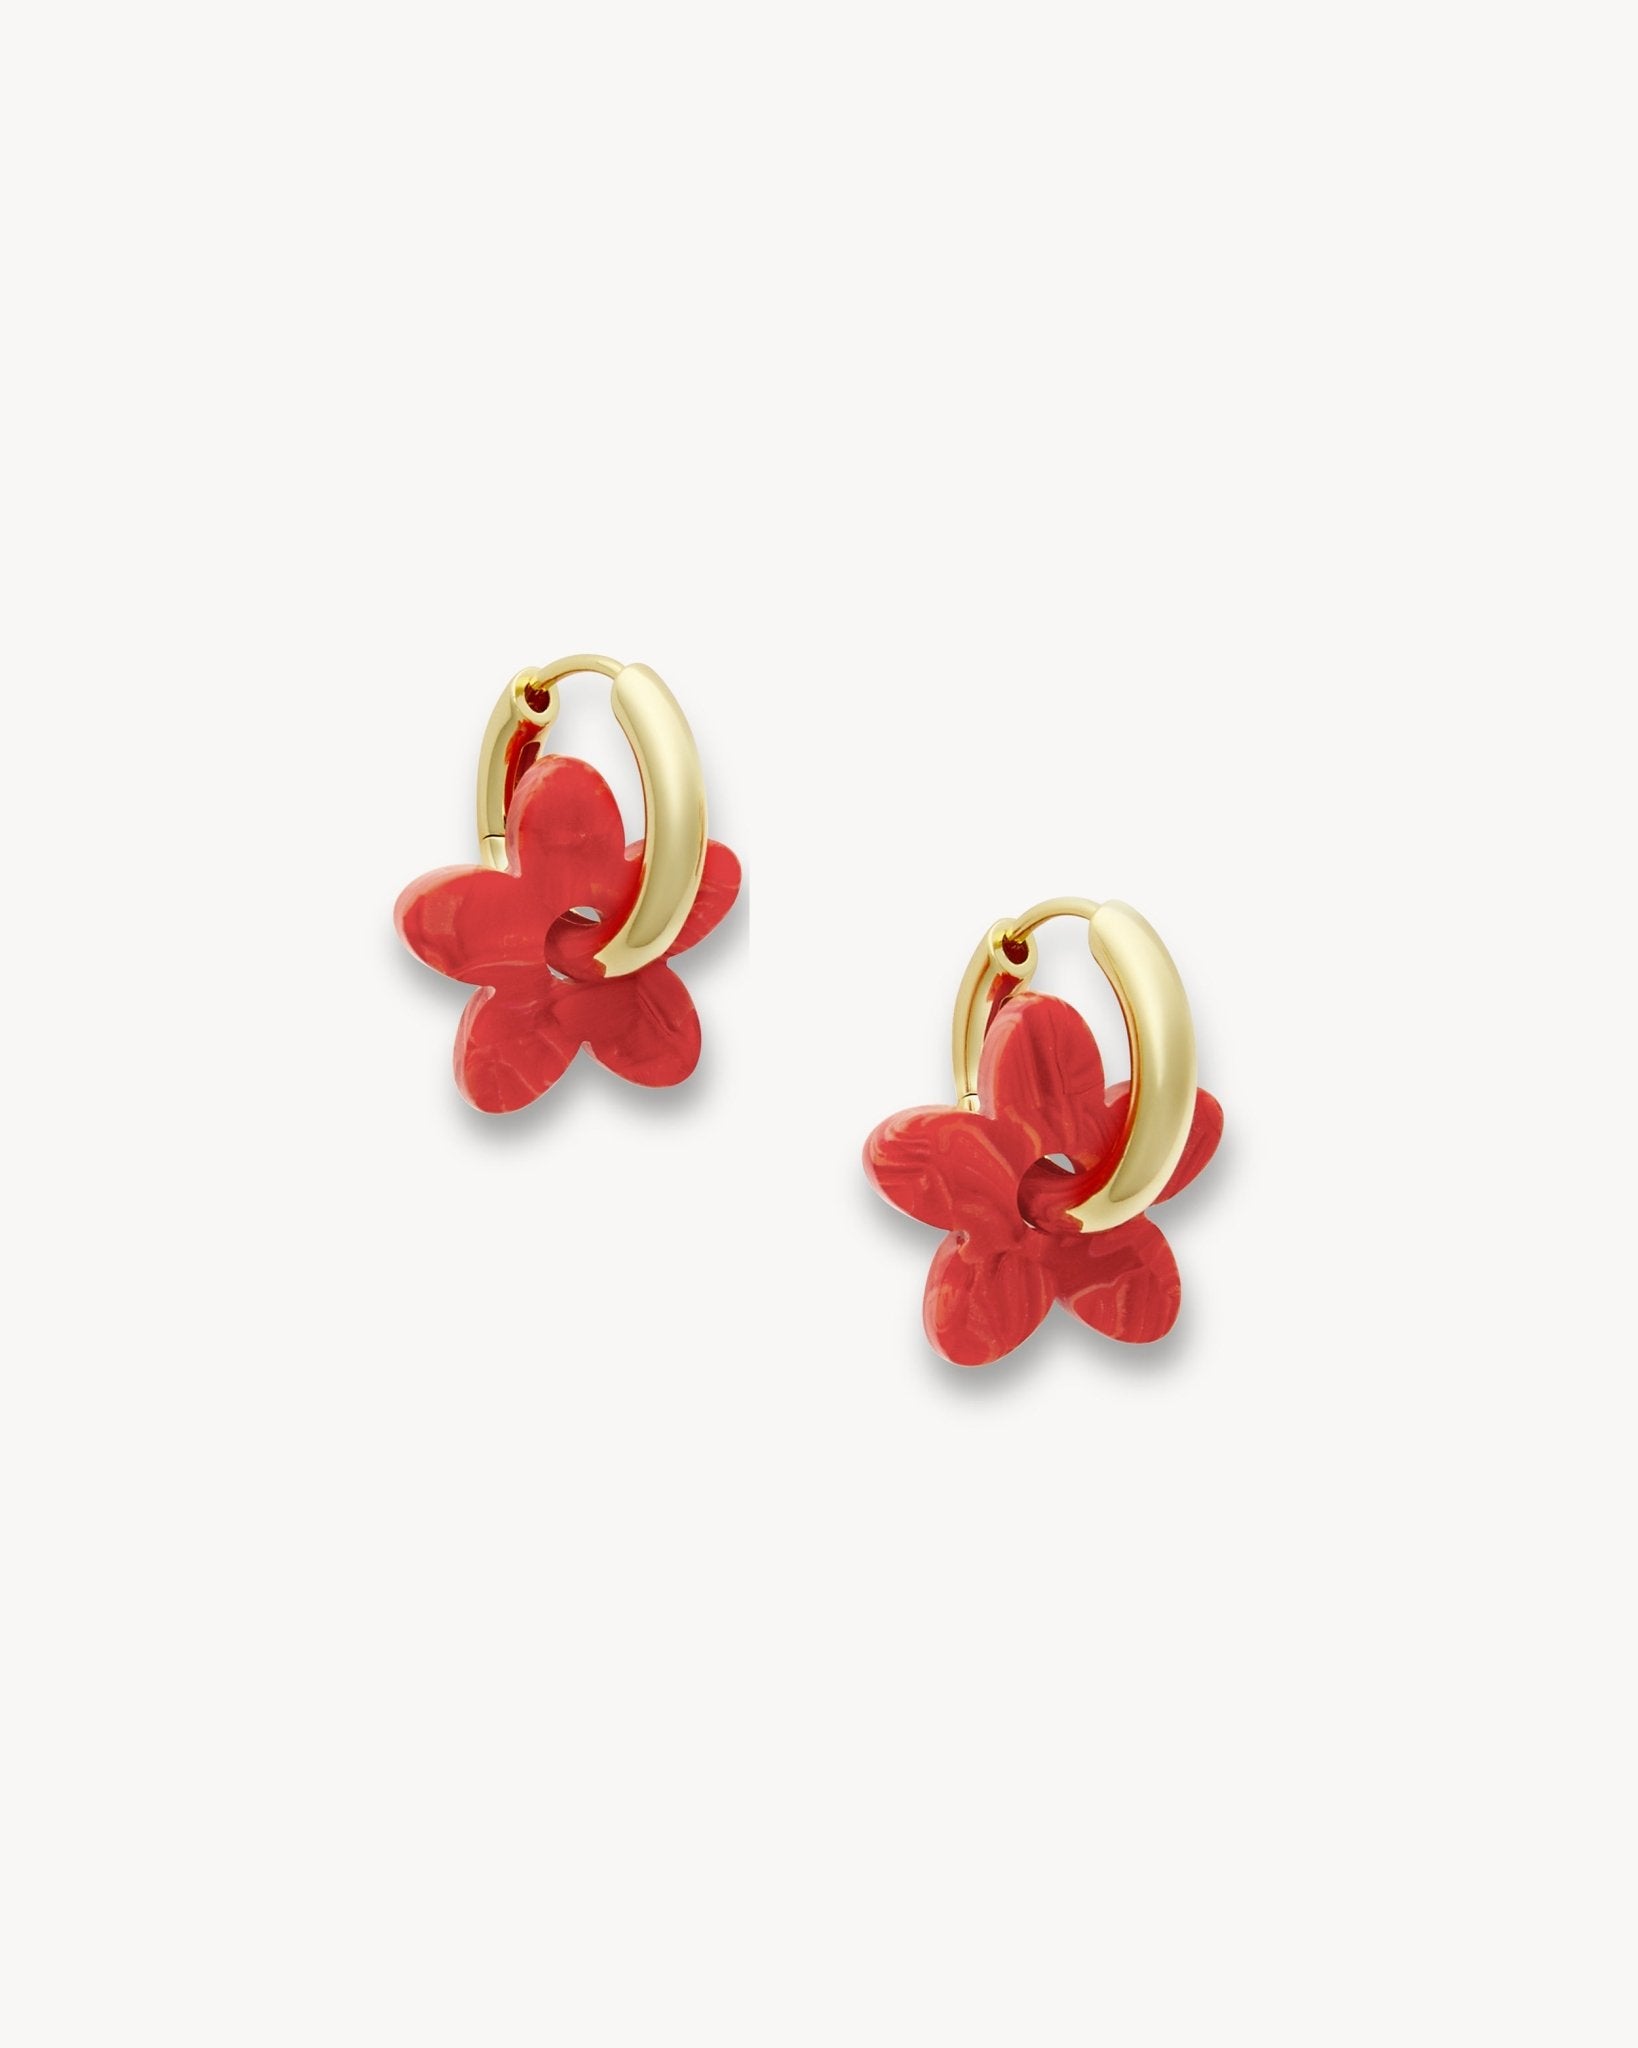 Flower Earring Charms in Poppy